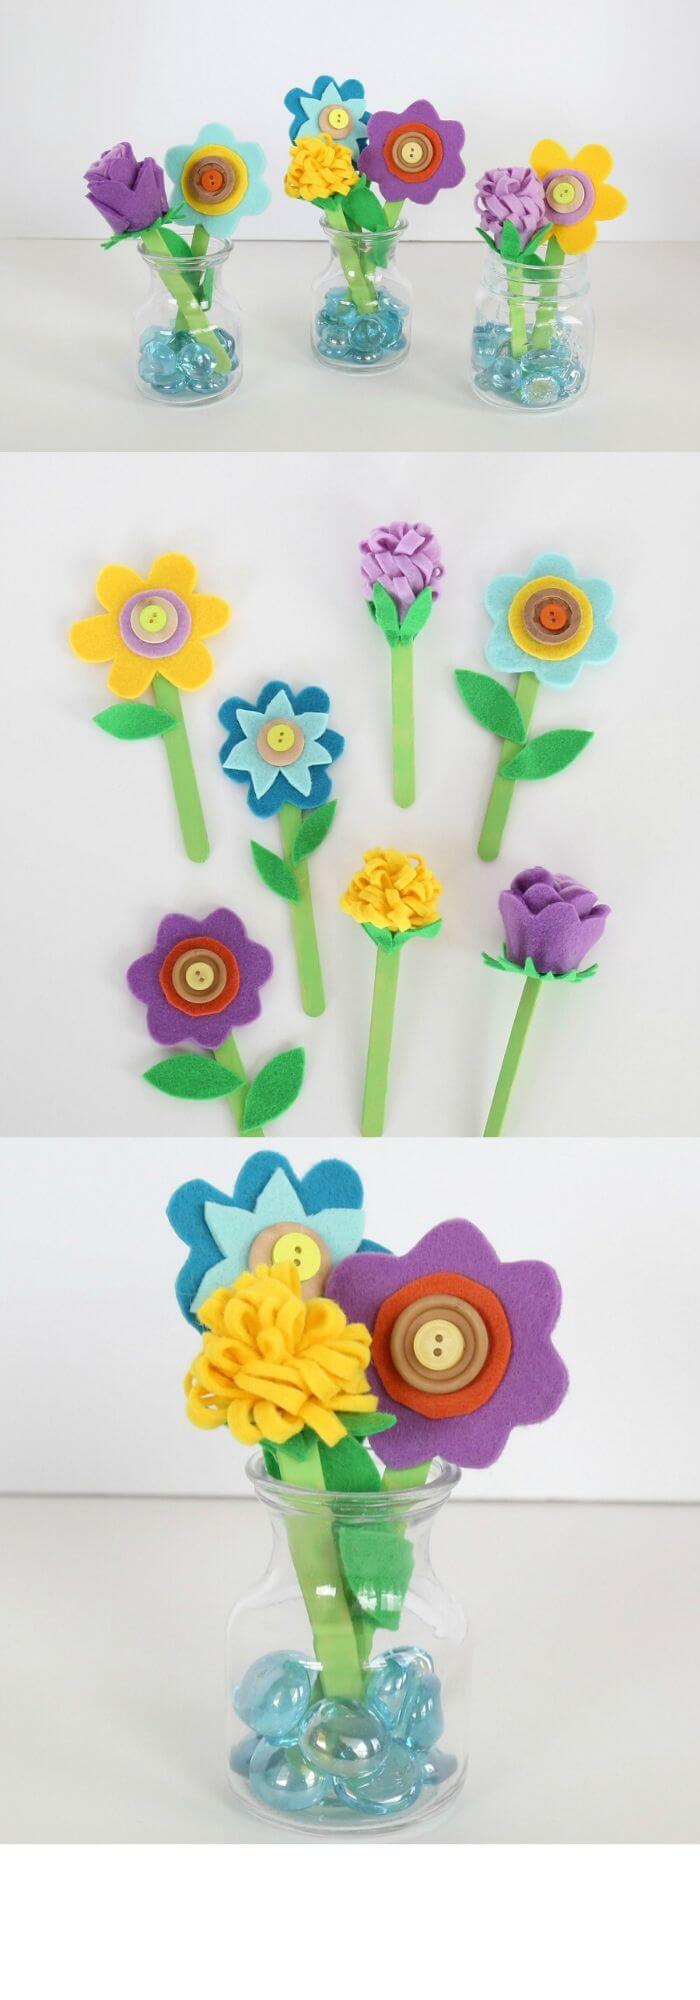 9 diy fabric flower ideas